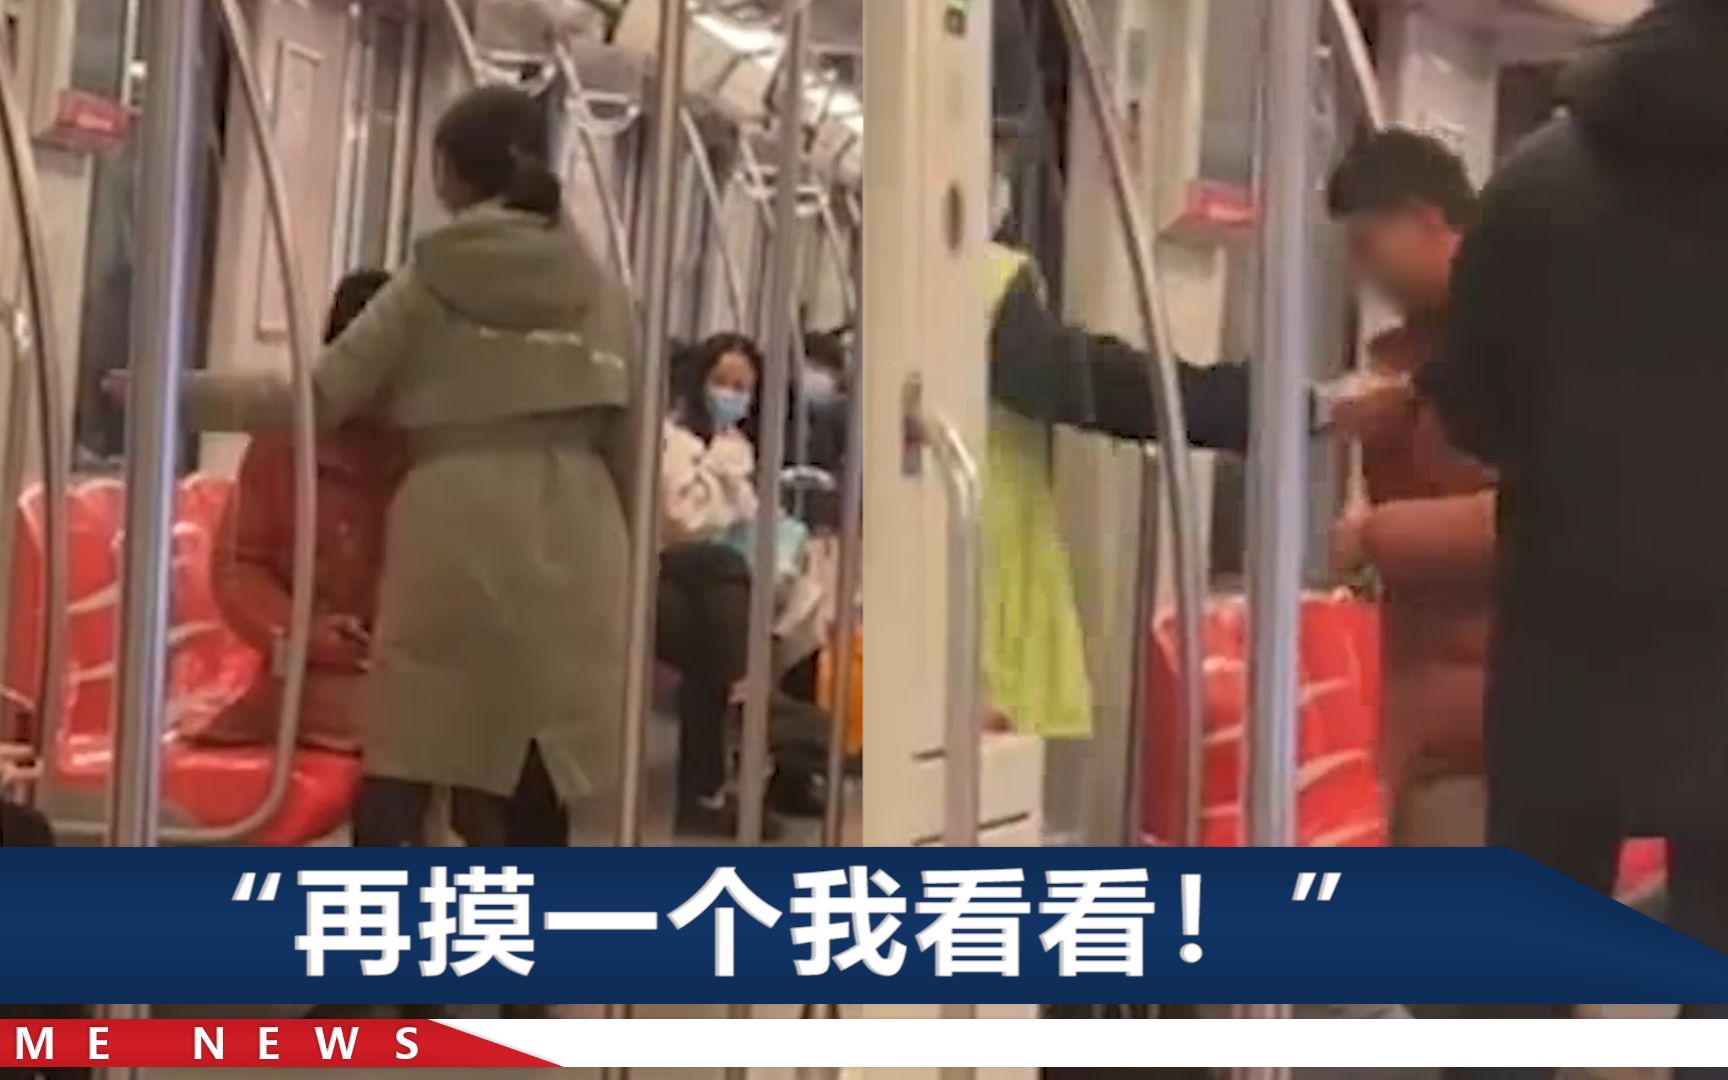 南京地铁上男子摸女乘客臀部，被连扇了好几个响亮耳光，警方通报